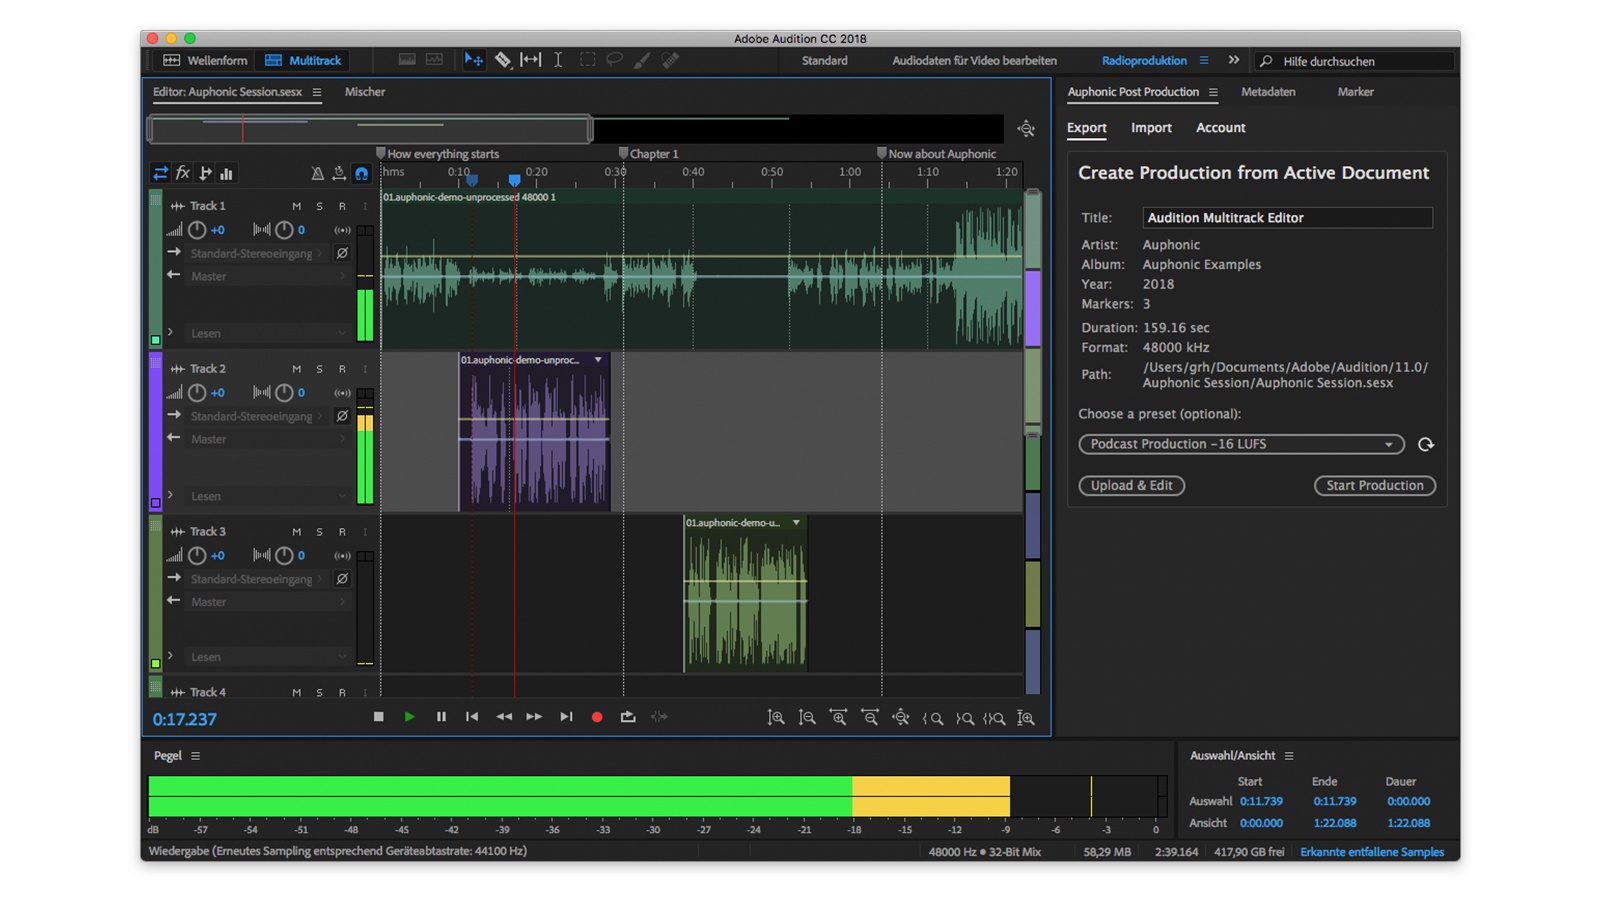 نرم افزار Adobe Audition بهترین ابزار برای ضبط پادکست به شمار می رود.